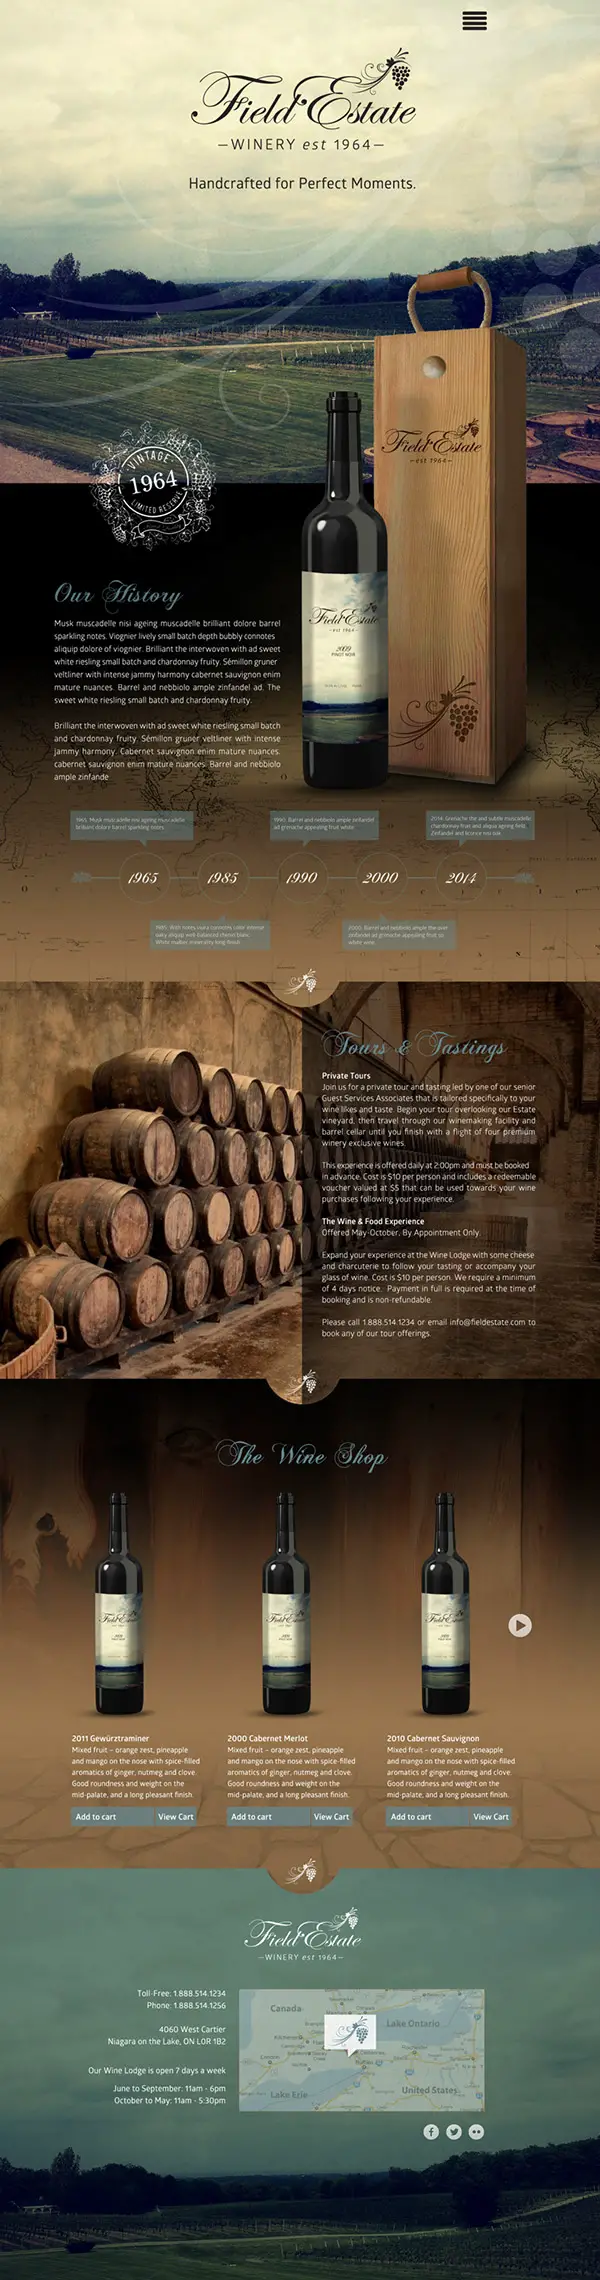 Field Estate Wine fullpage website